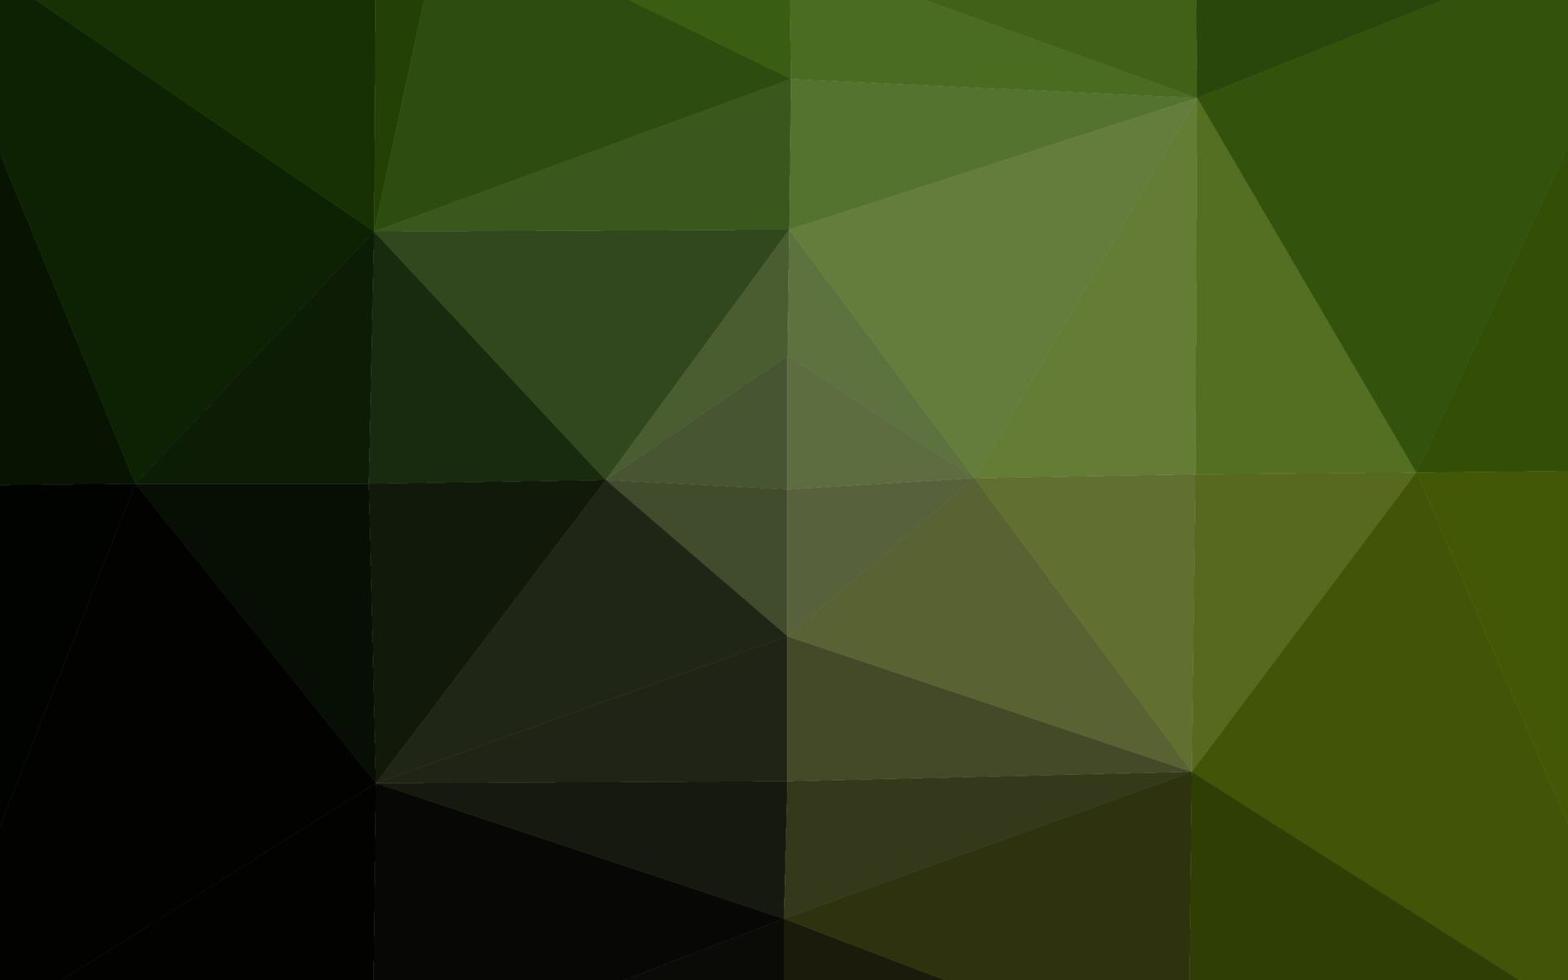 pano de fundo abstrato do polígono do vetor verde escuro.